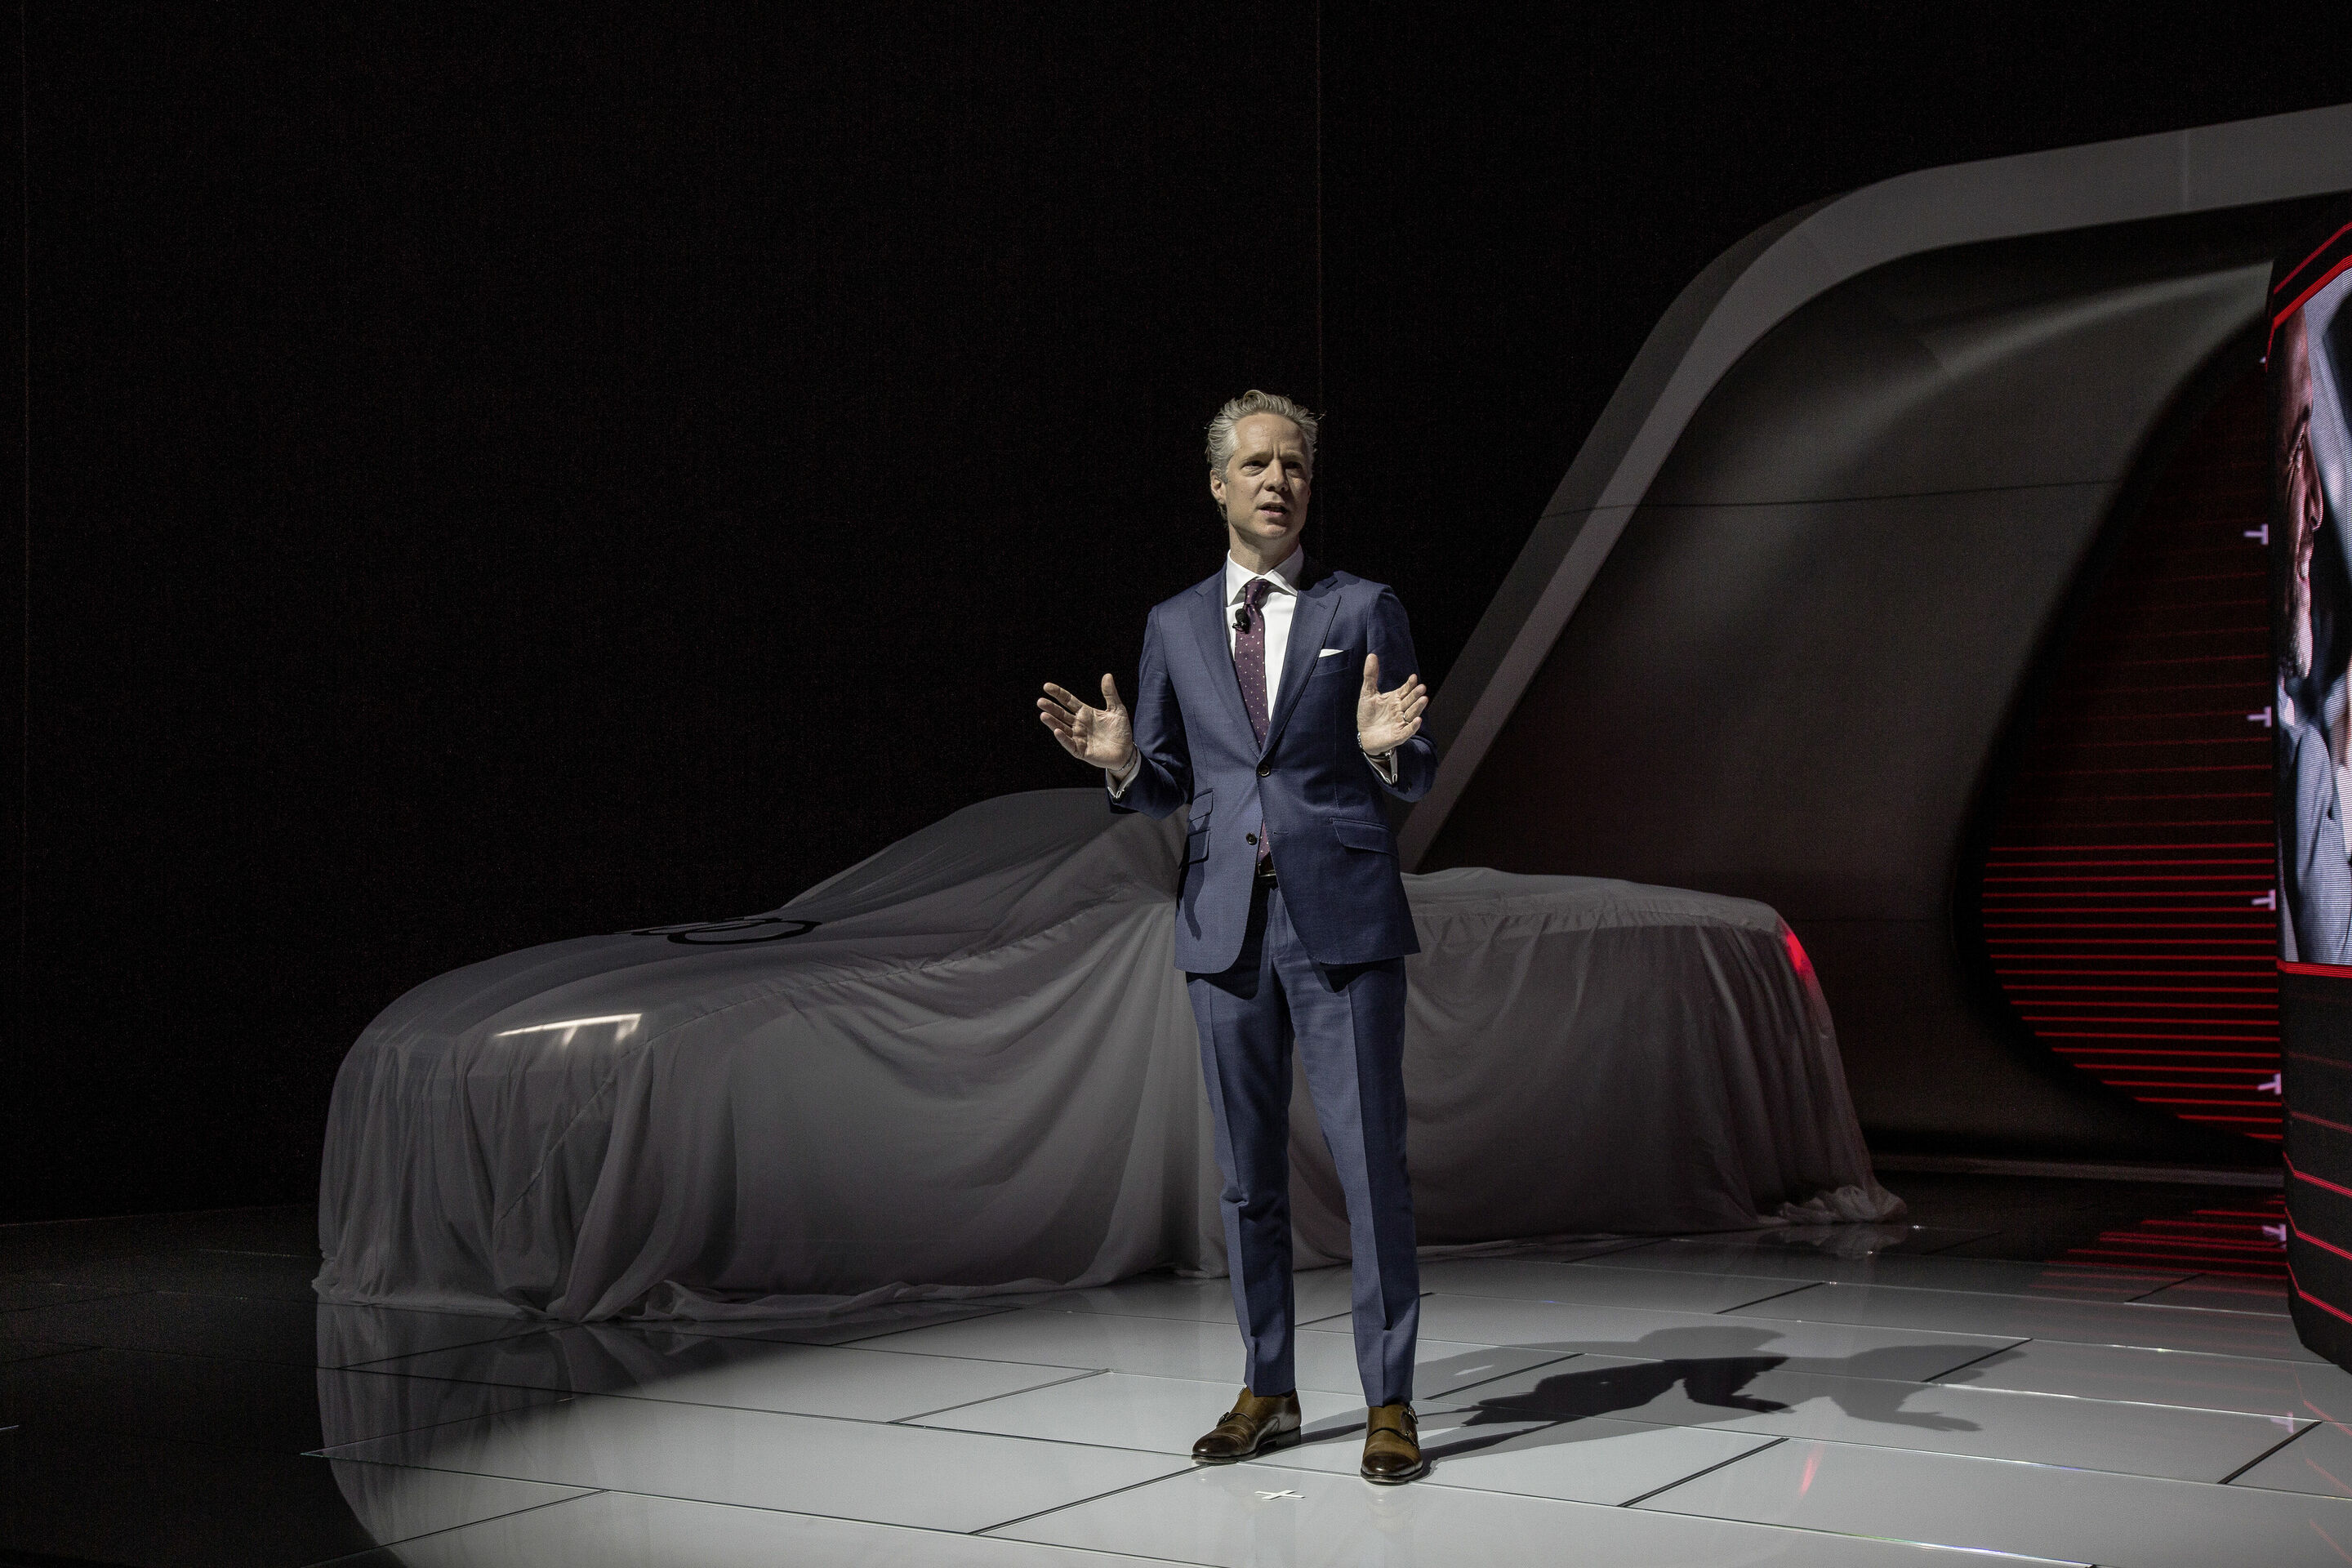 Audi auf der North American Auto Show 2017 in Detroit